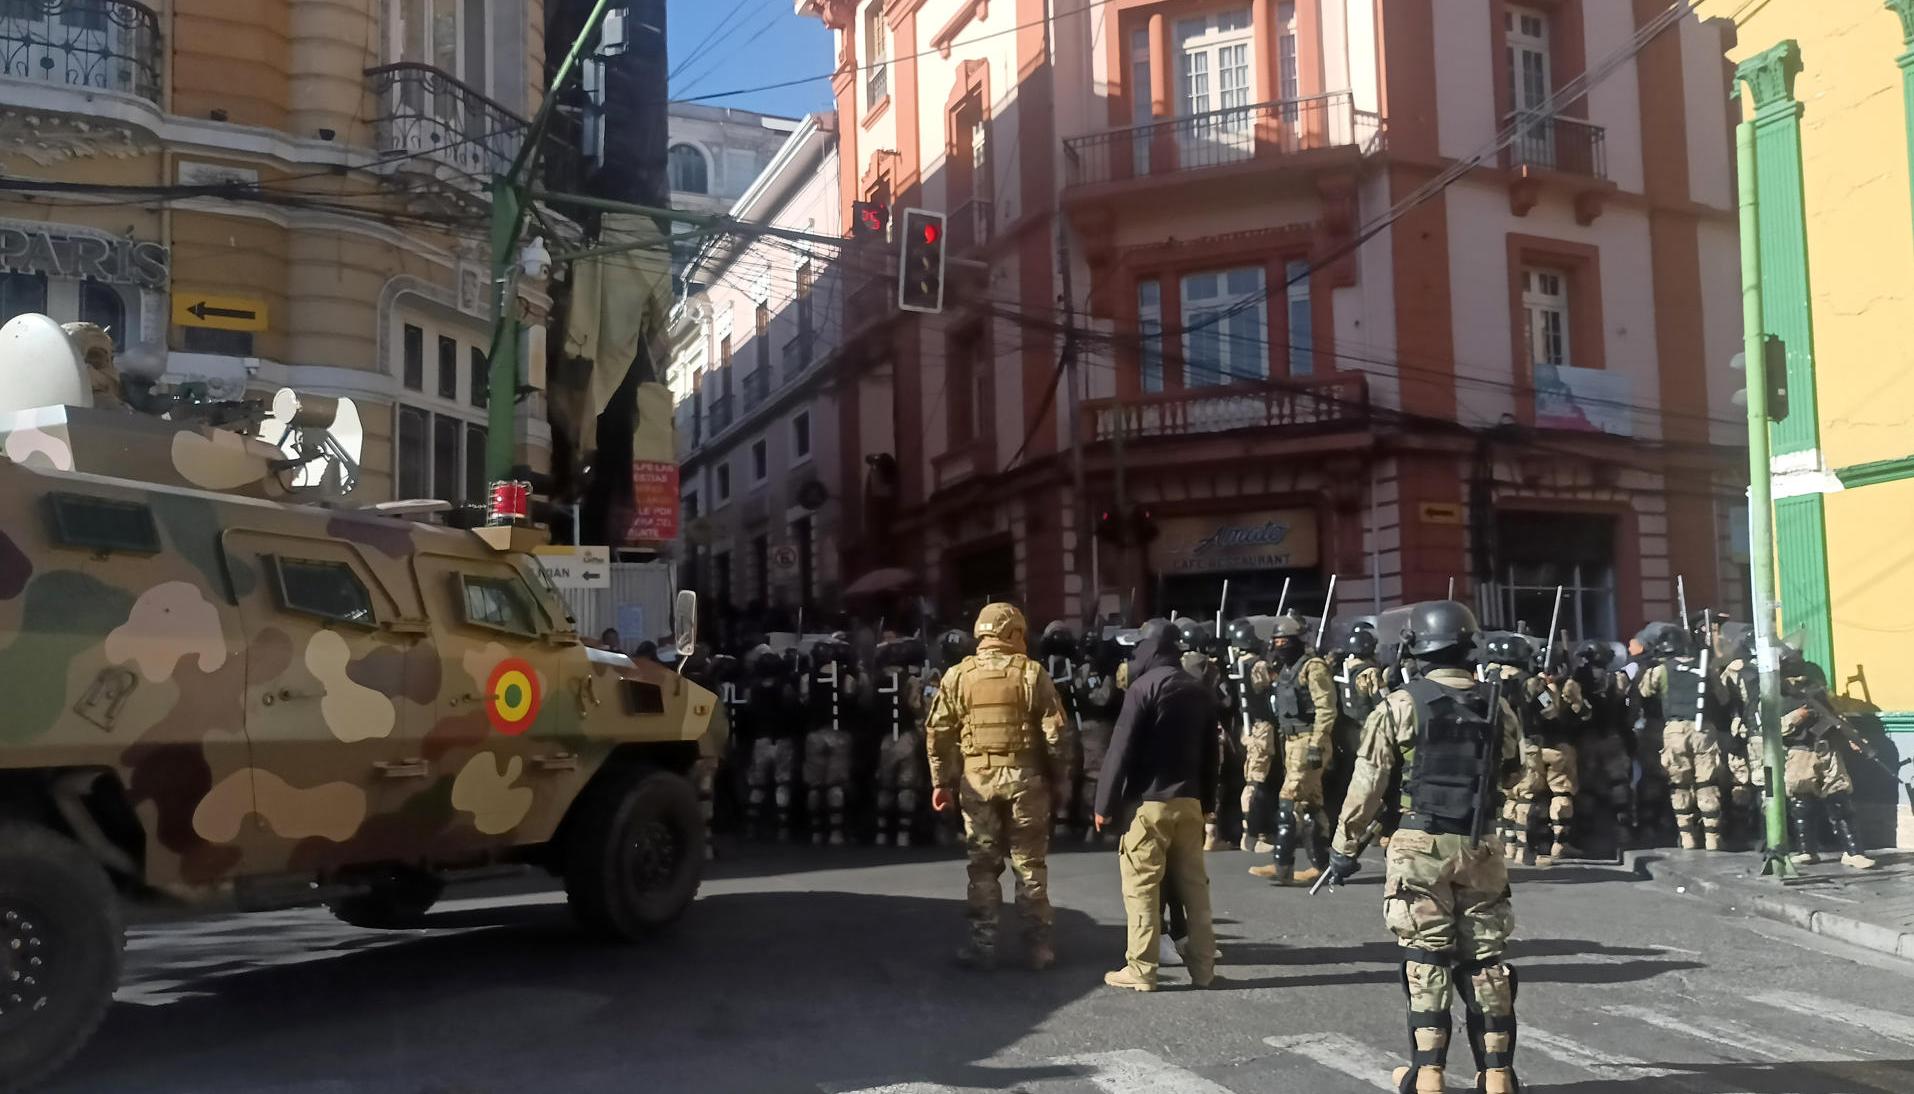  Militares hacen presencia con tanques frente a la sede del Gobierno de Bolivia.